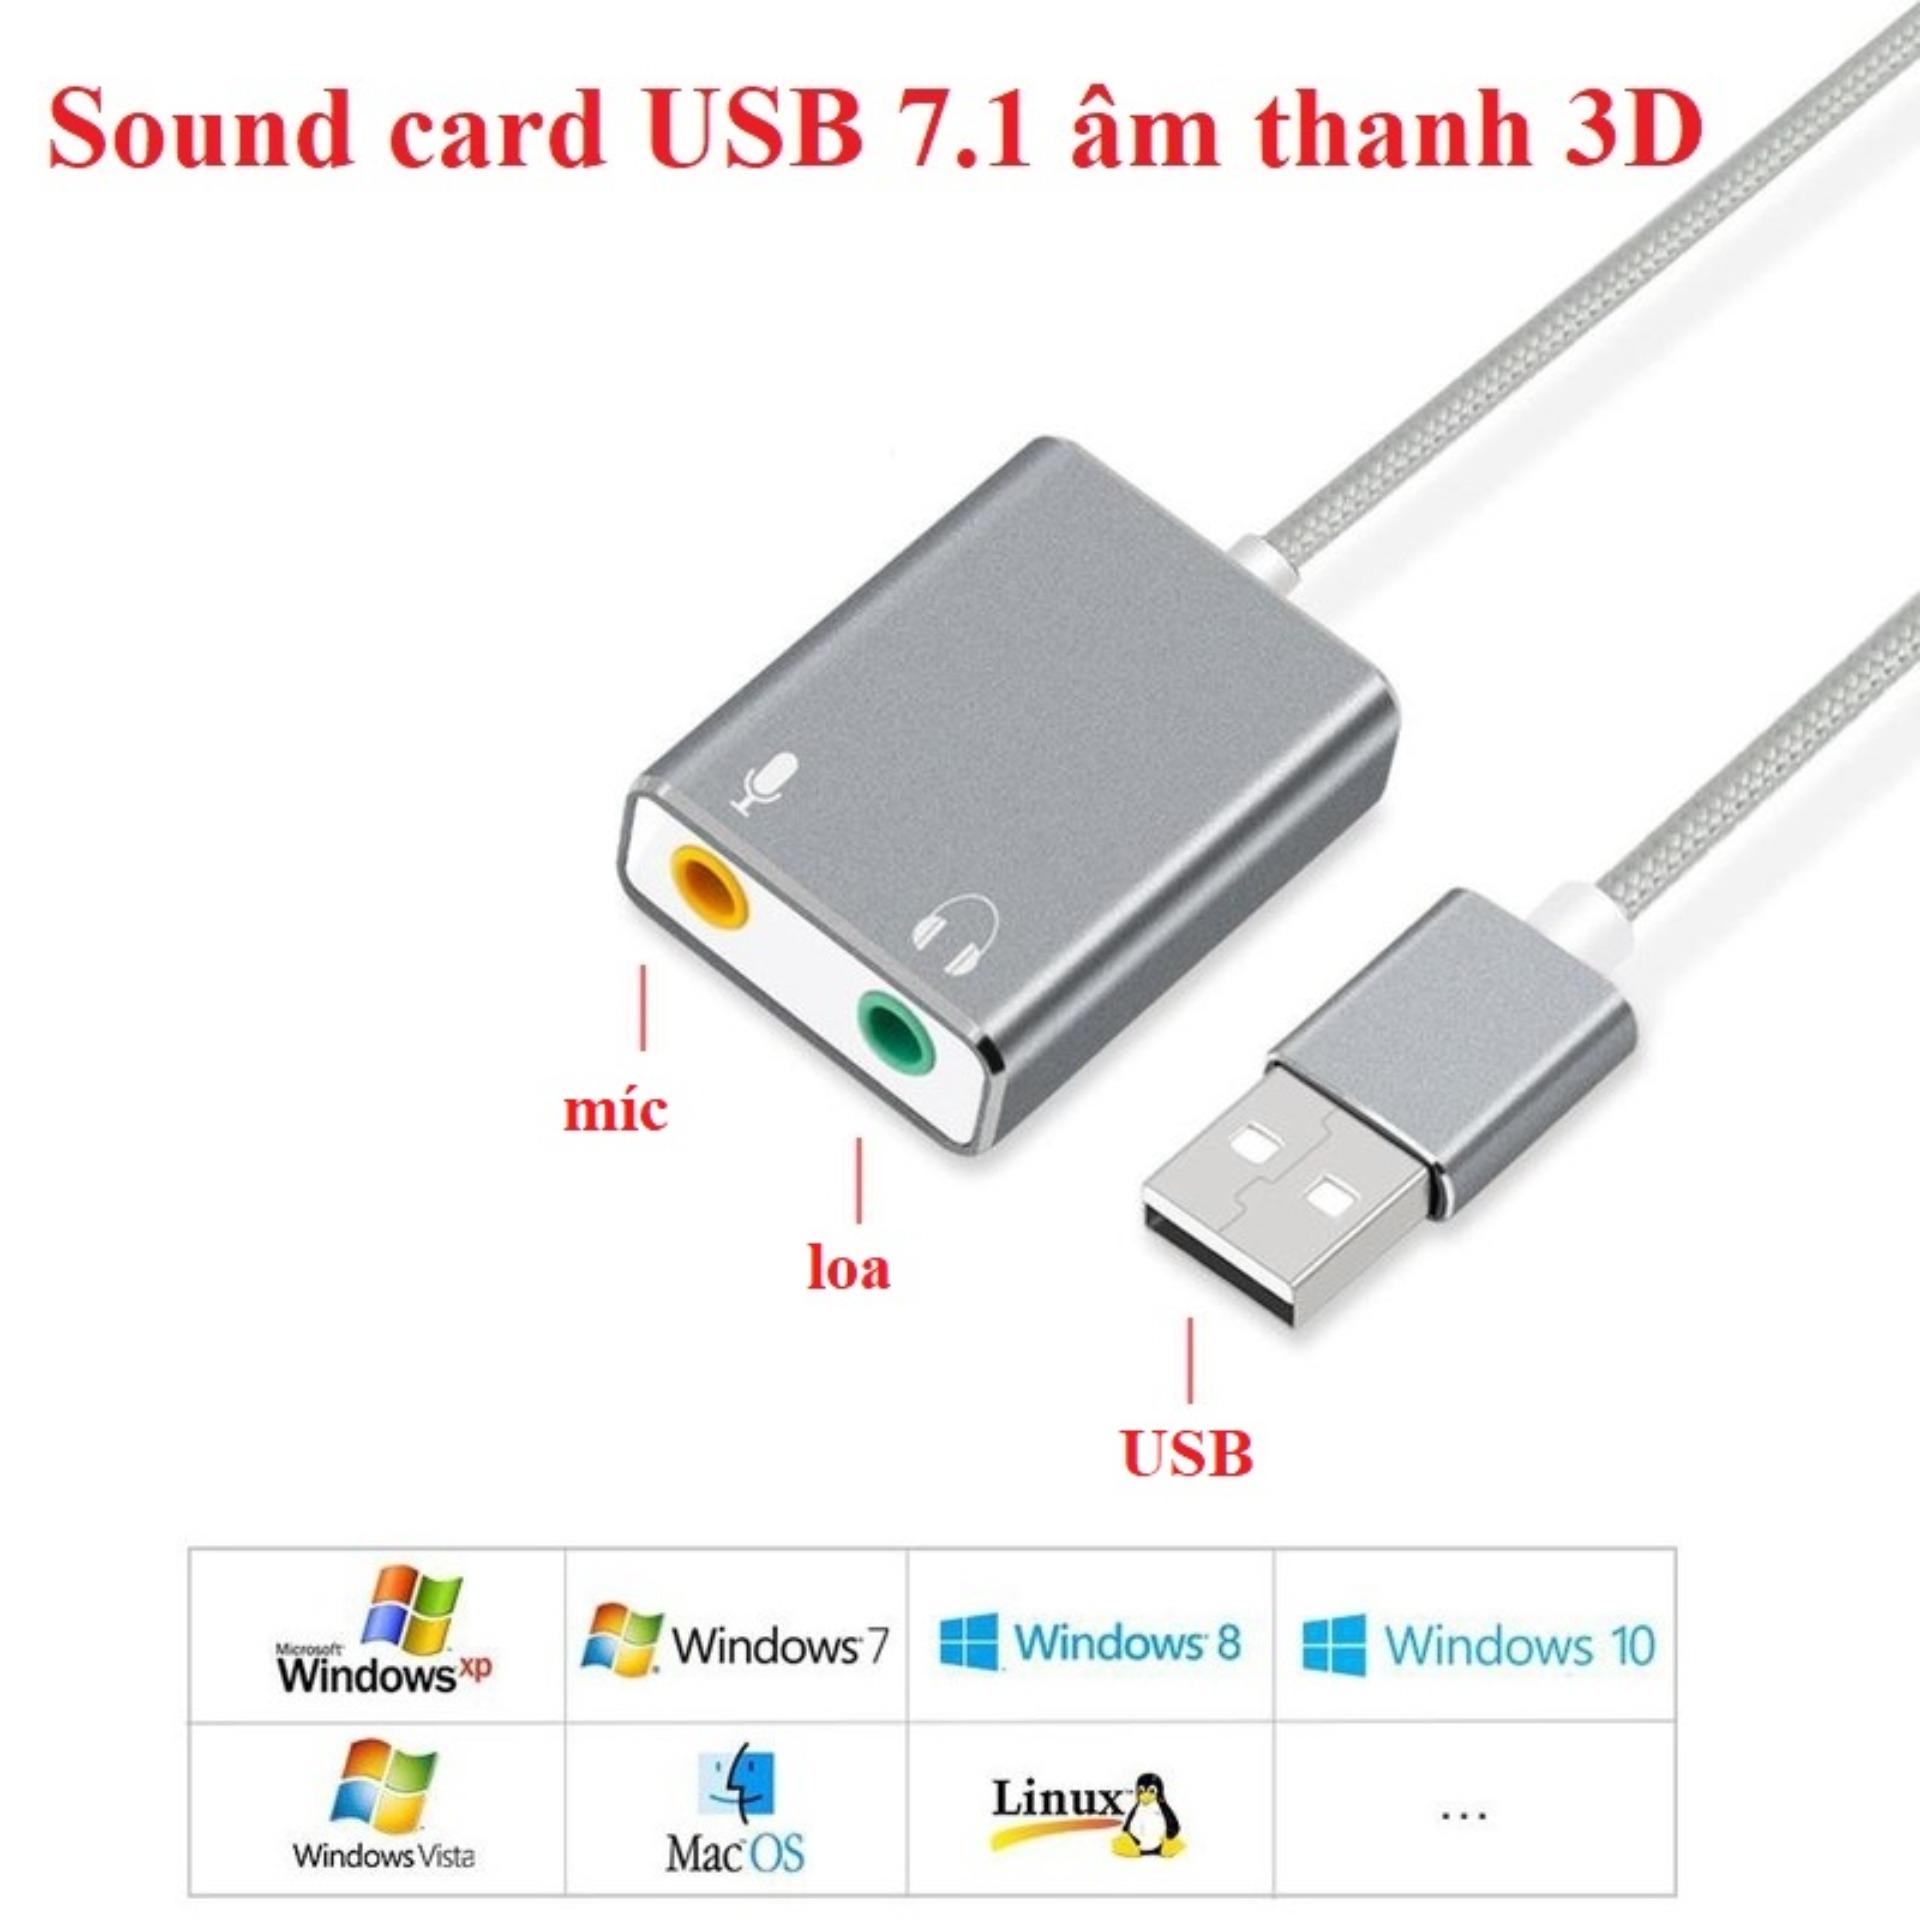 Sound card USB 7.1 âm thanh 3D vỏ nhôm cao cấp giá rẻ